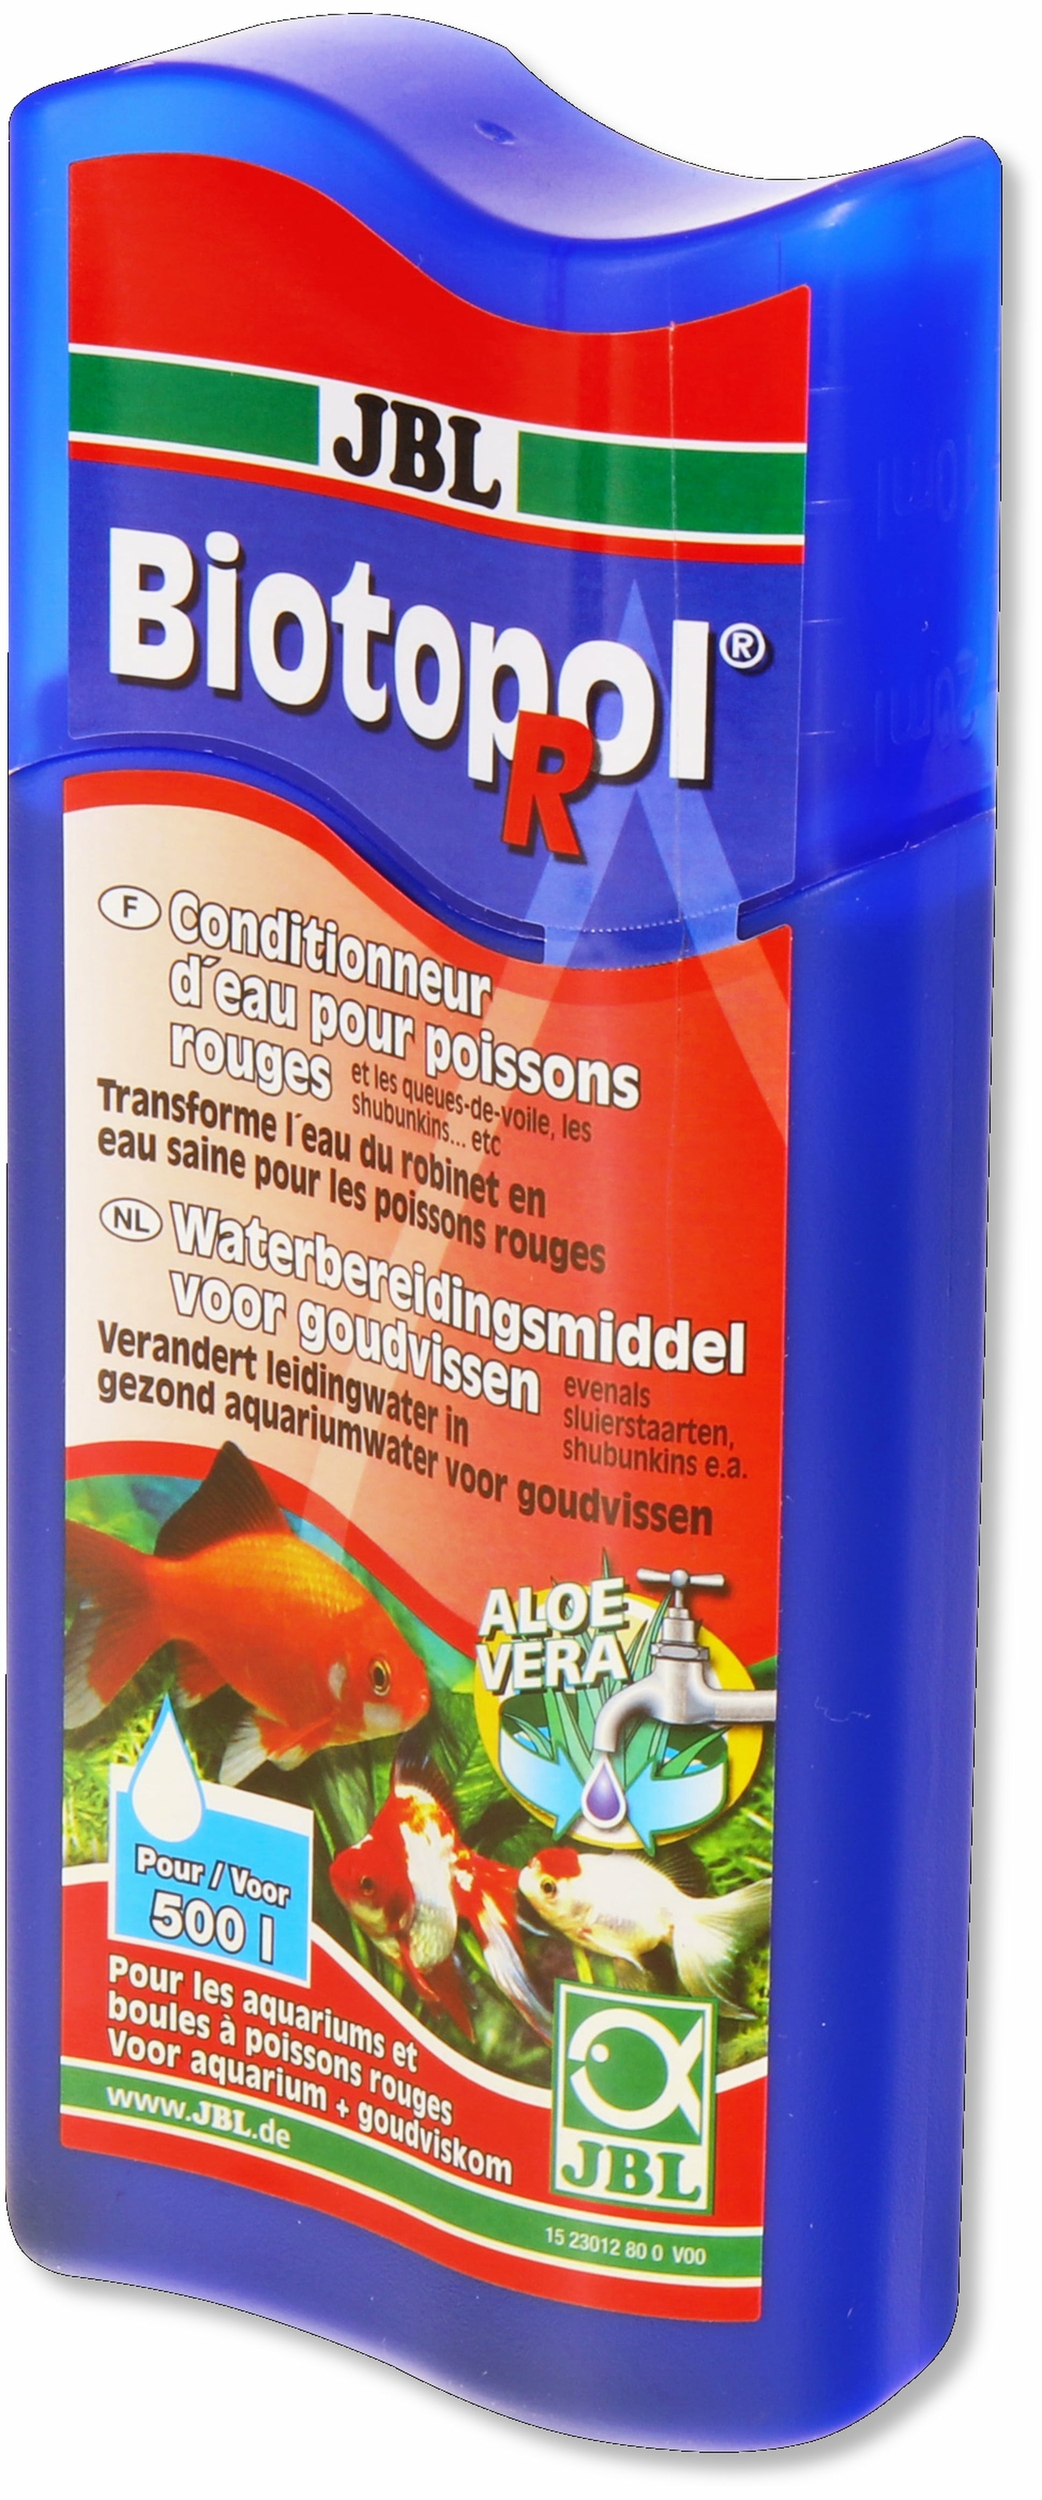 jbl-biotopol-r-250-ml-conditionneur-d-eau-du-robinet-pour-poissons-rouges-min